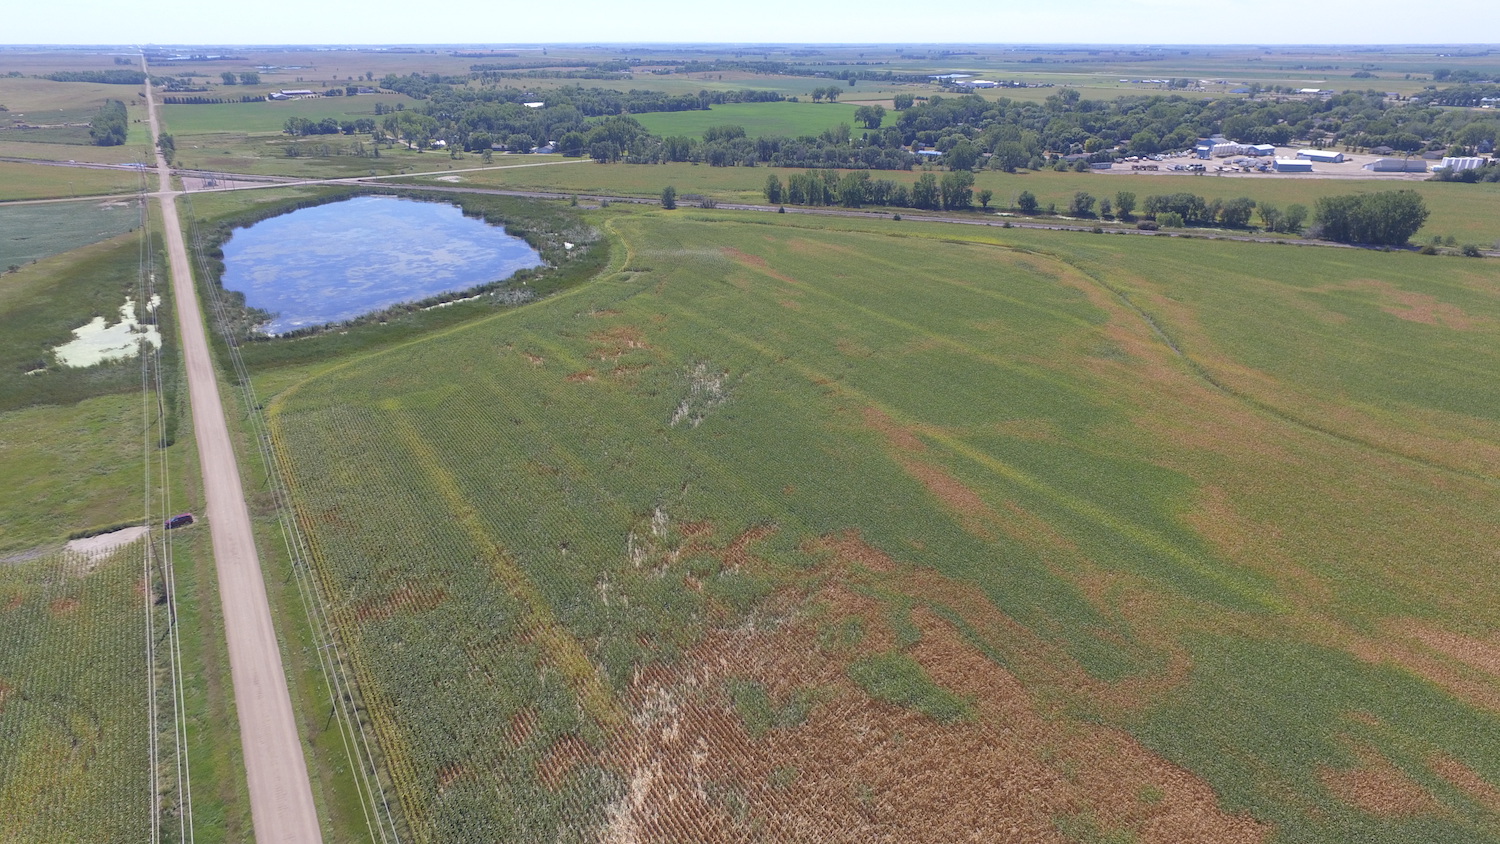 Tornado track starting in corn field on southeast side of Redfield (Photo by Steve Fleegel)